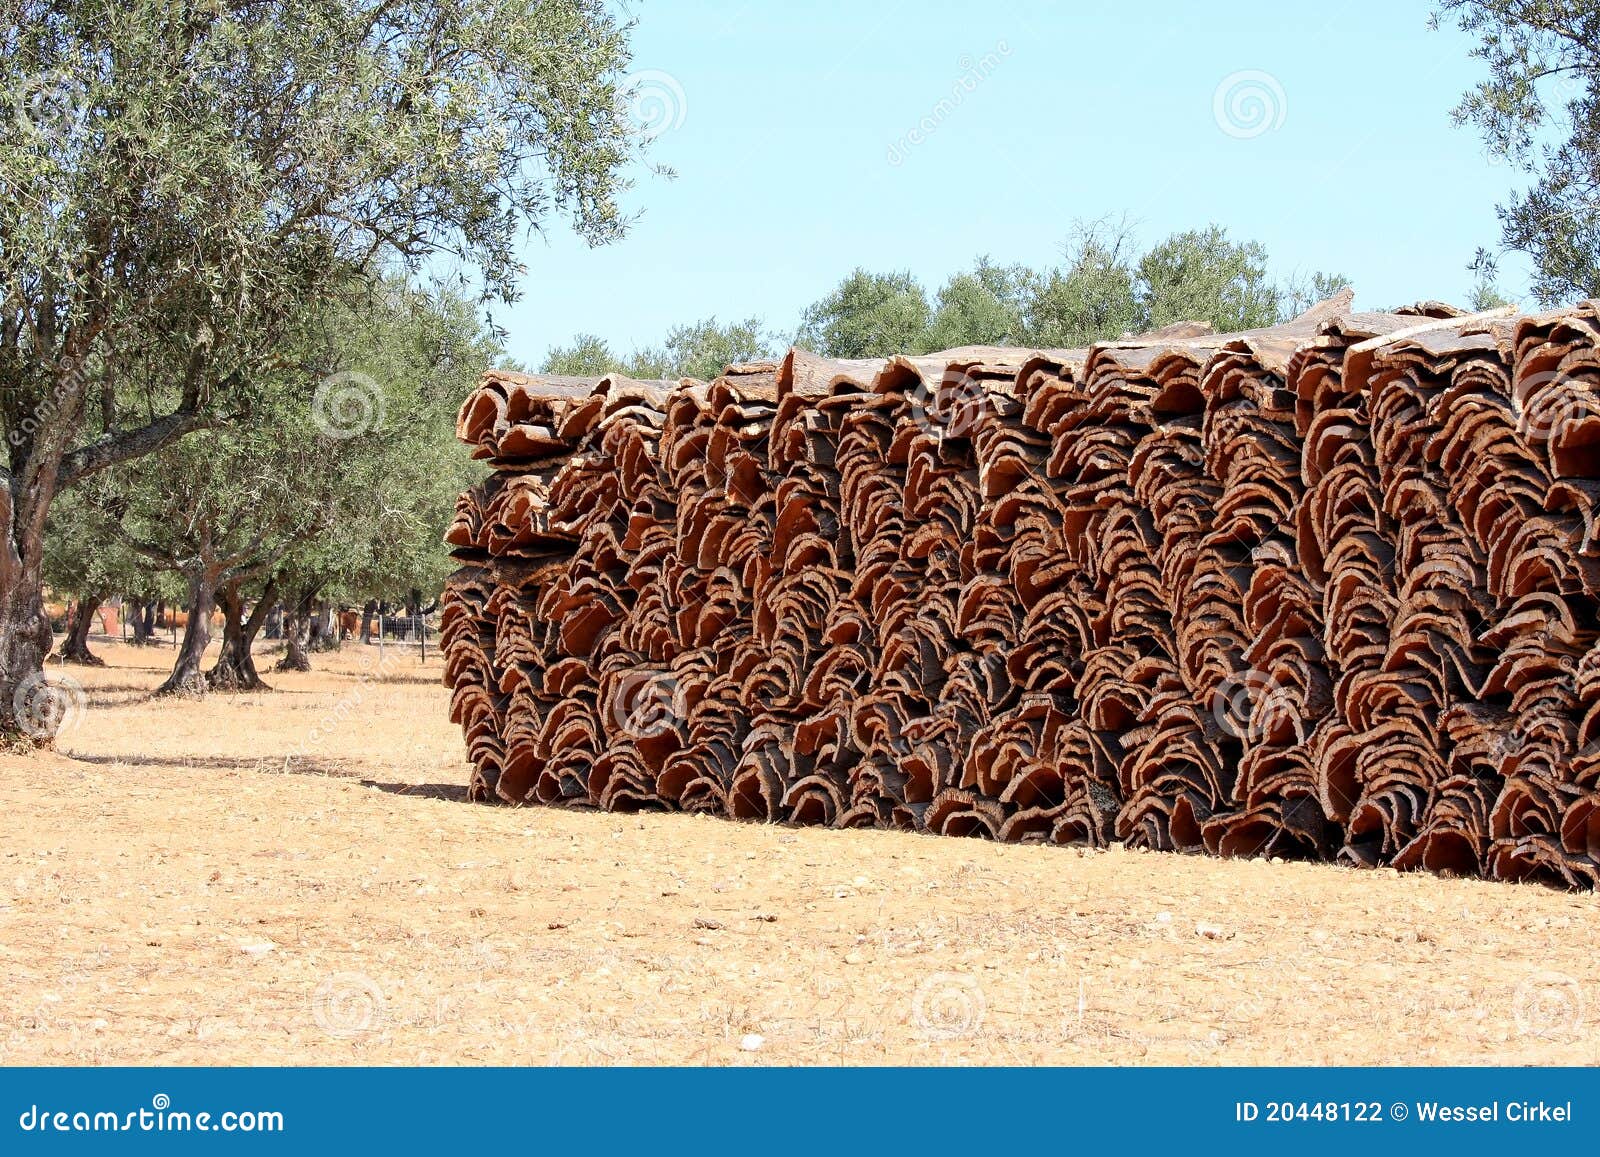 stacked bark of the cork oak in alentejo, portugal